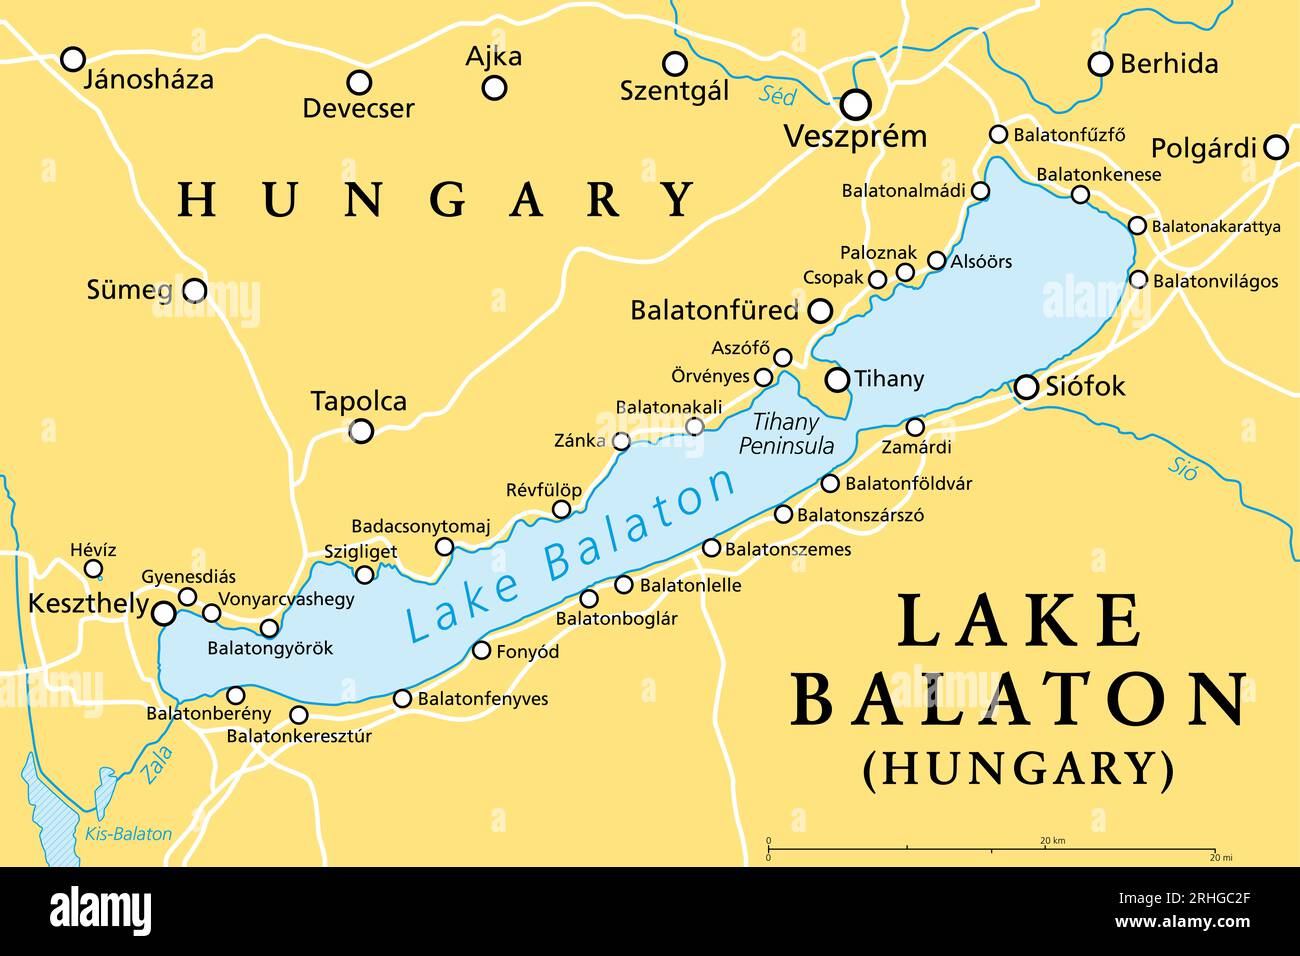 Lake Balaton, politische Karte. Süßwasserrisssee in der transdanubischen Region Ungarns in Europa. Touristische Region mit vielen Ferienorten. Stockfoto